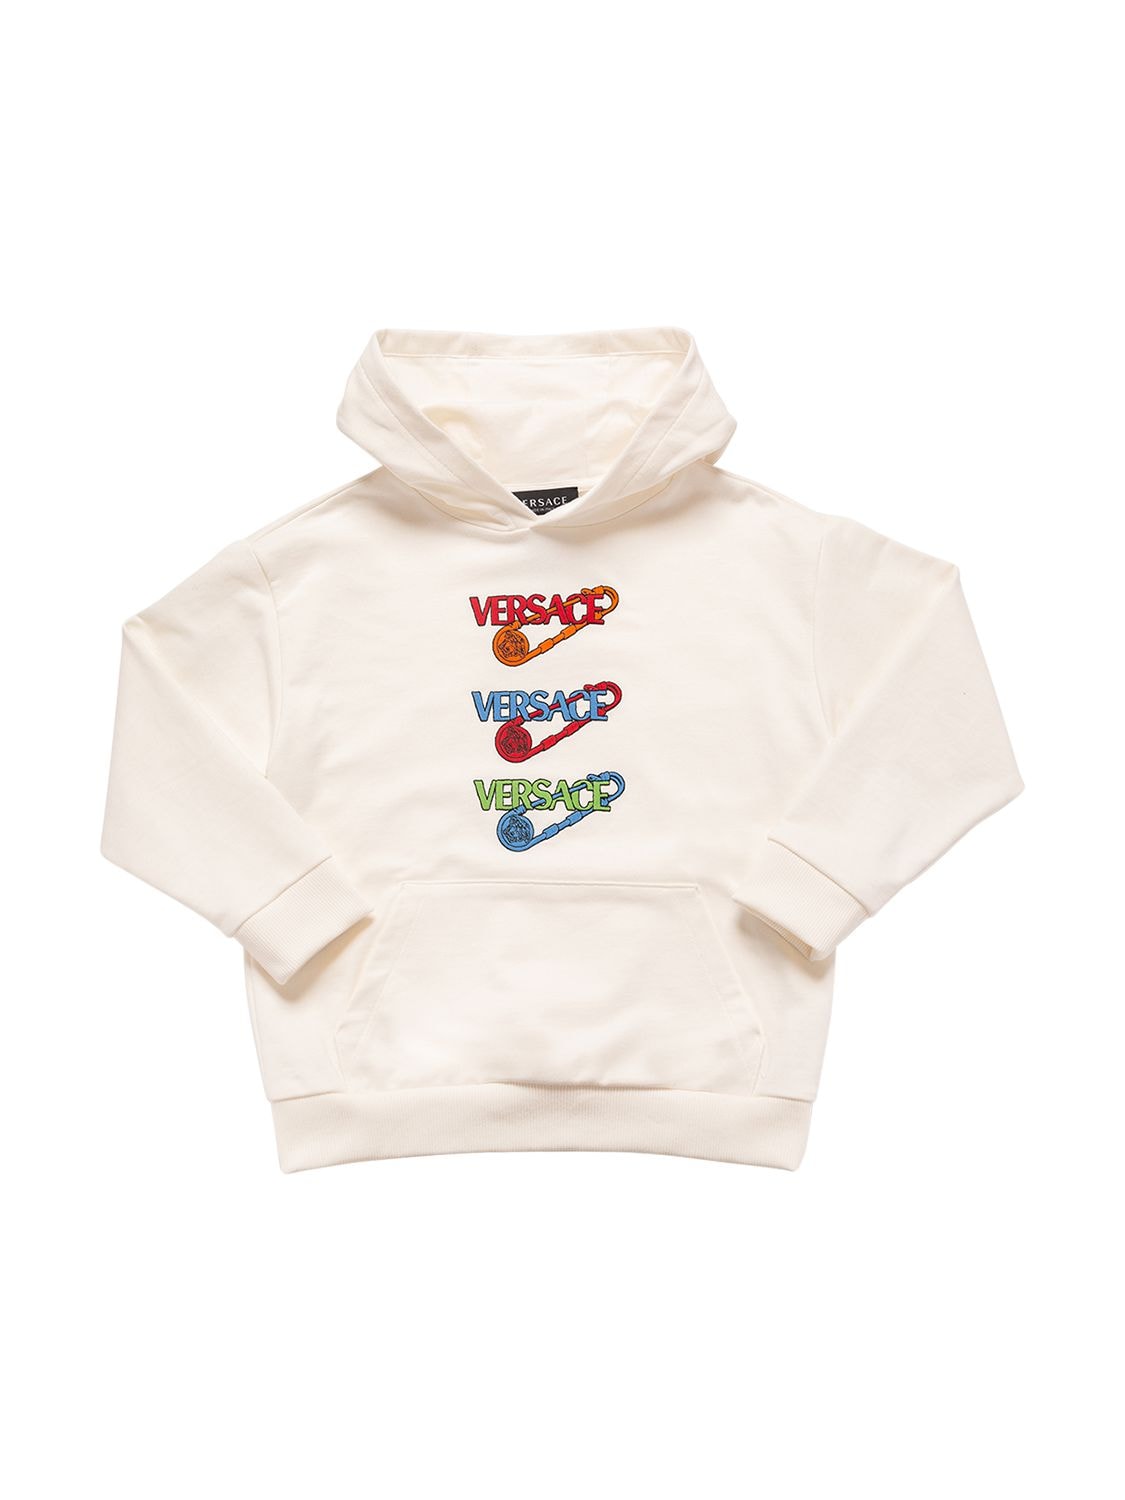 Versace Kids' Printed Cotton Sweatshirt Hoodie In White